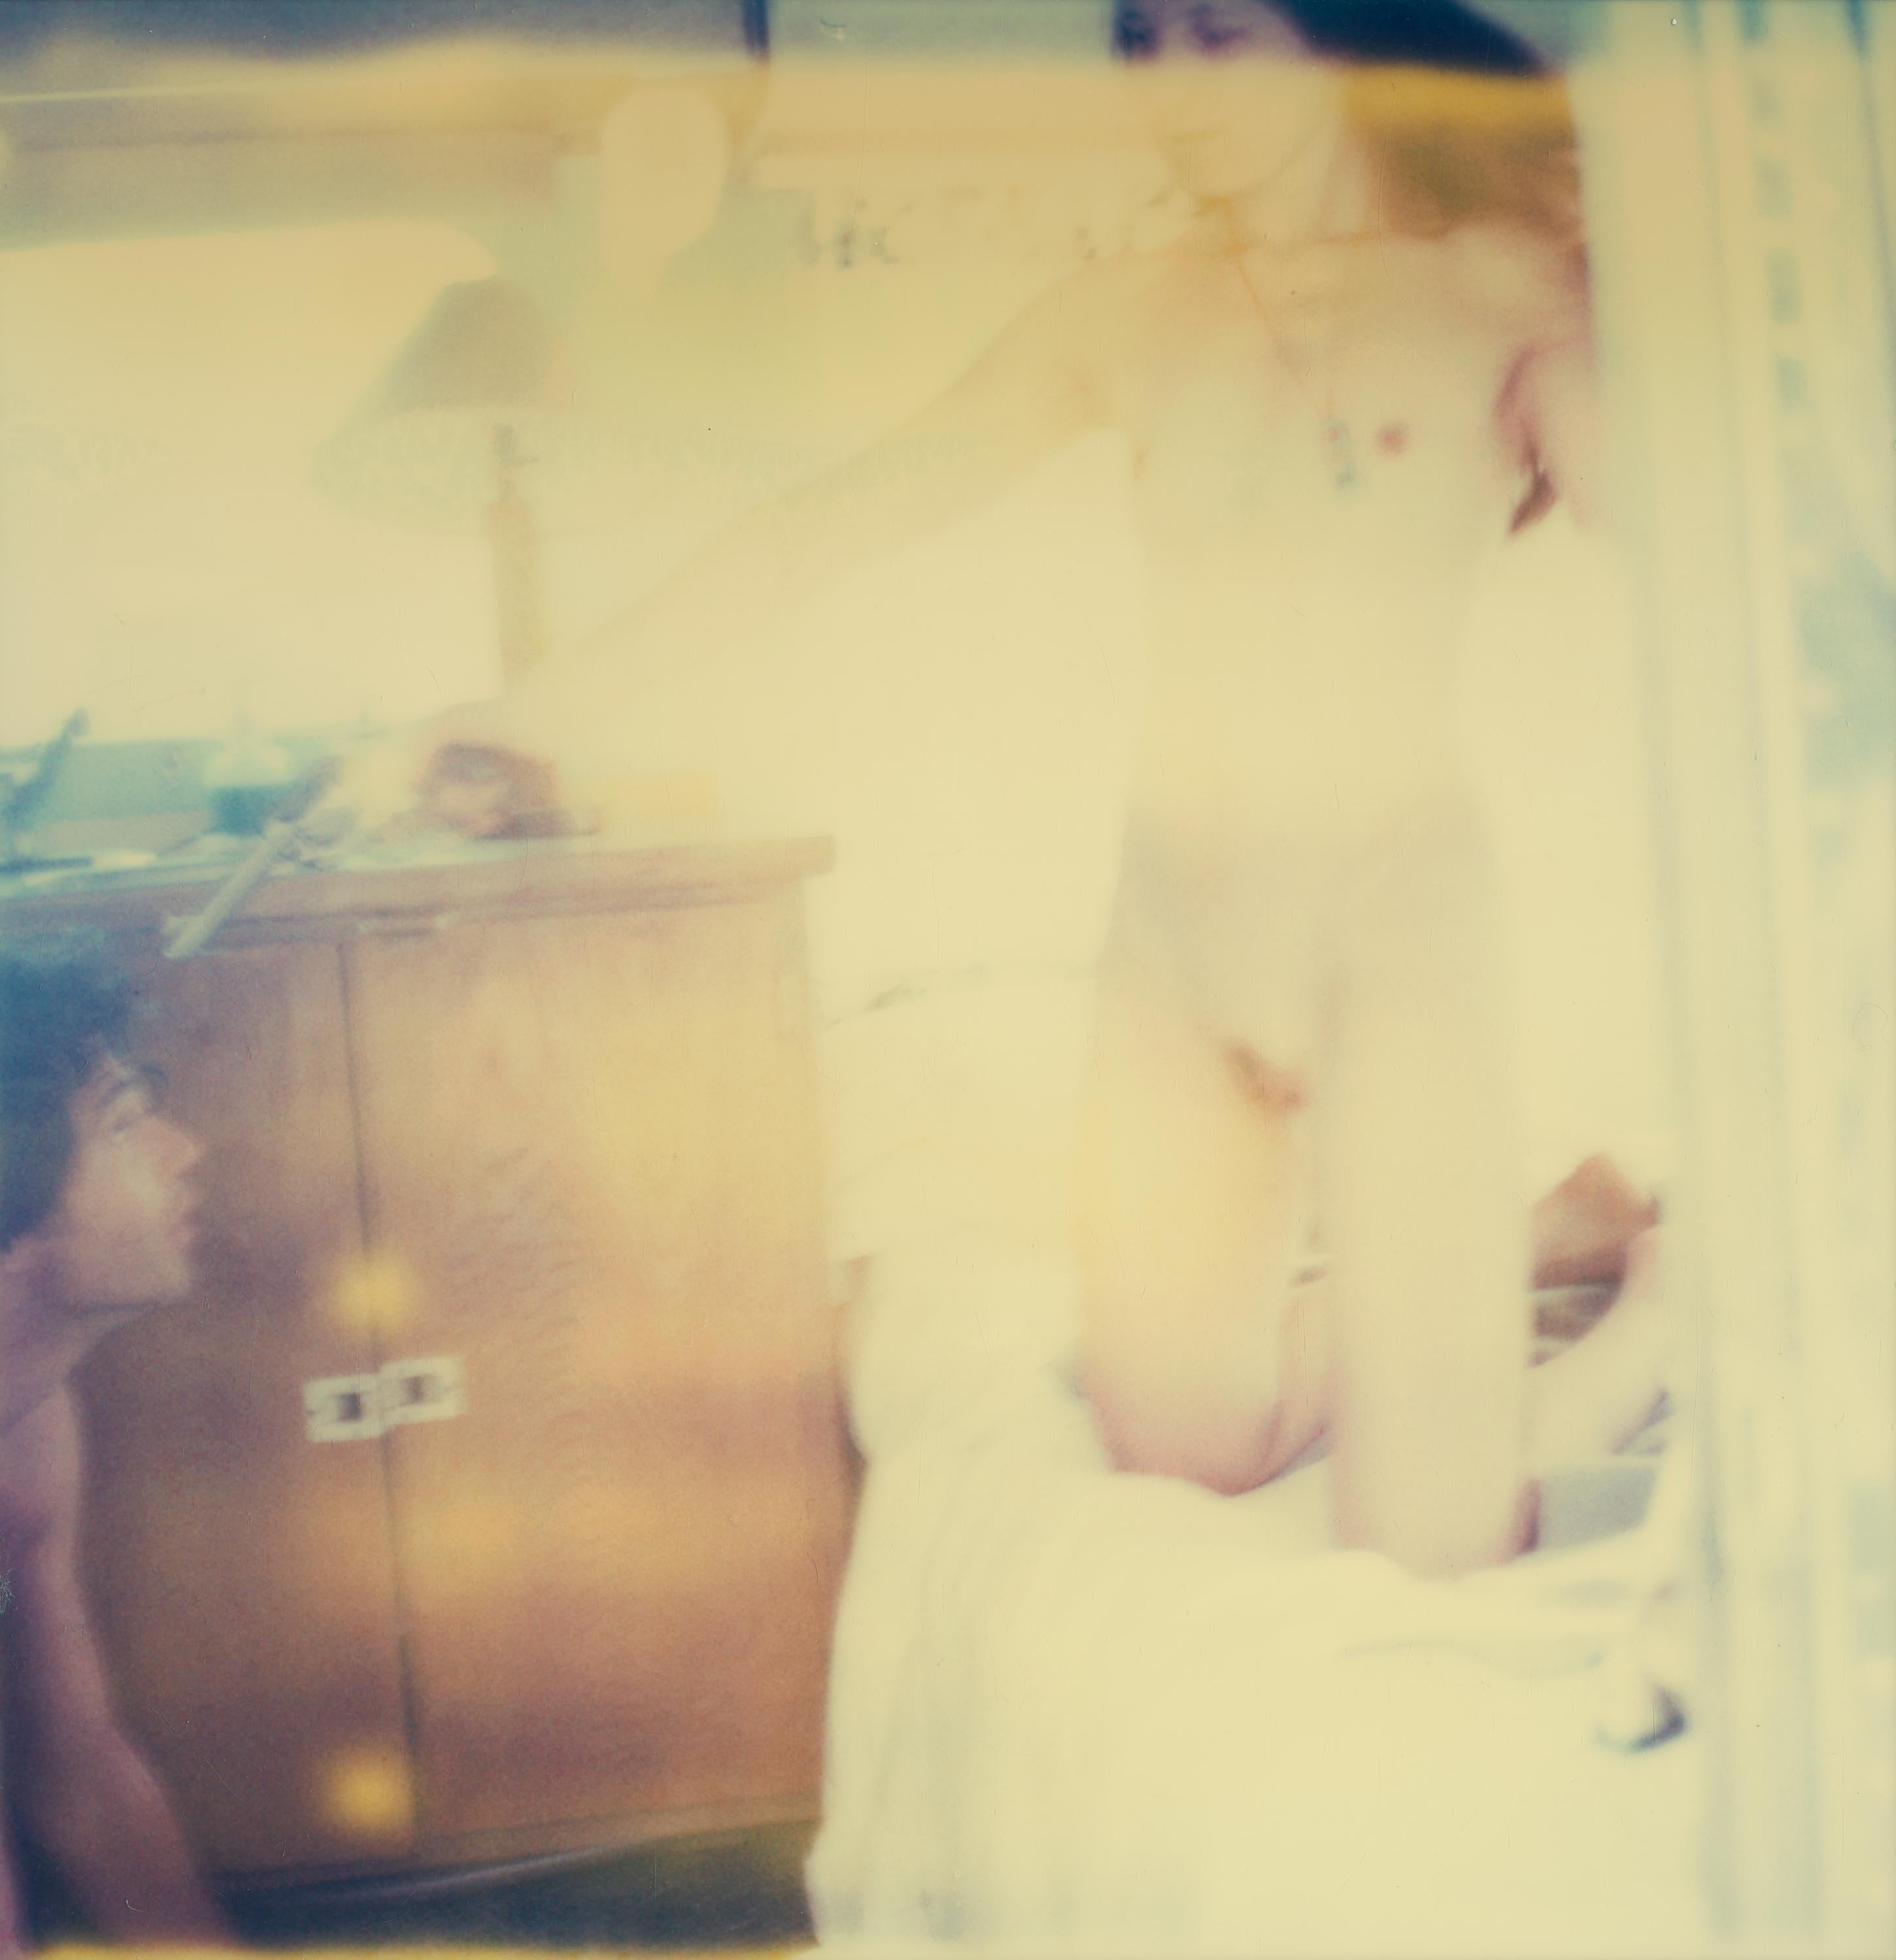 Bells Ringing (Sidewinder) - Polaroid, Contemporary, Man, Women, Love - Beige Color Photograph by Stefanie Schneider